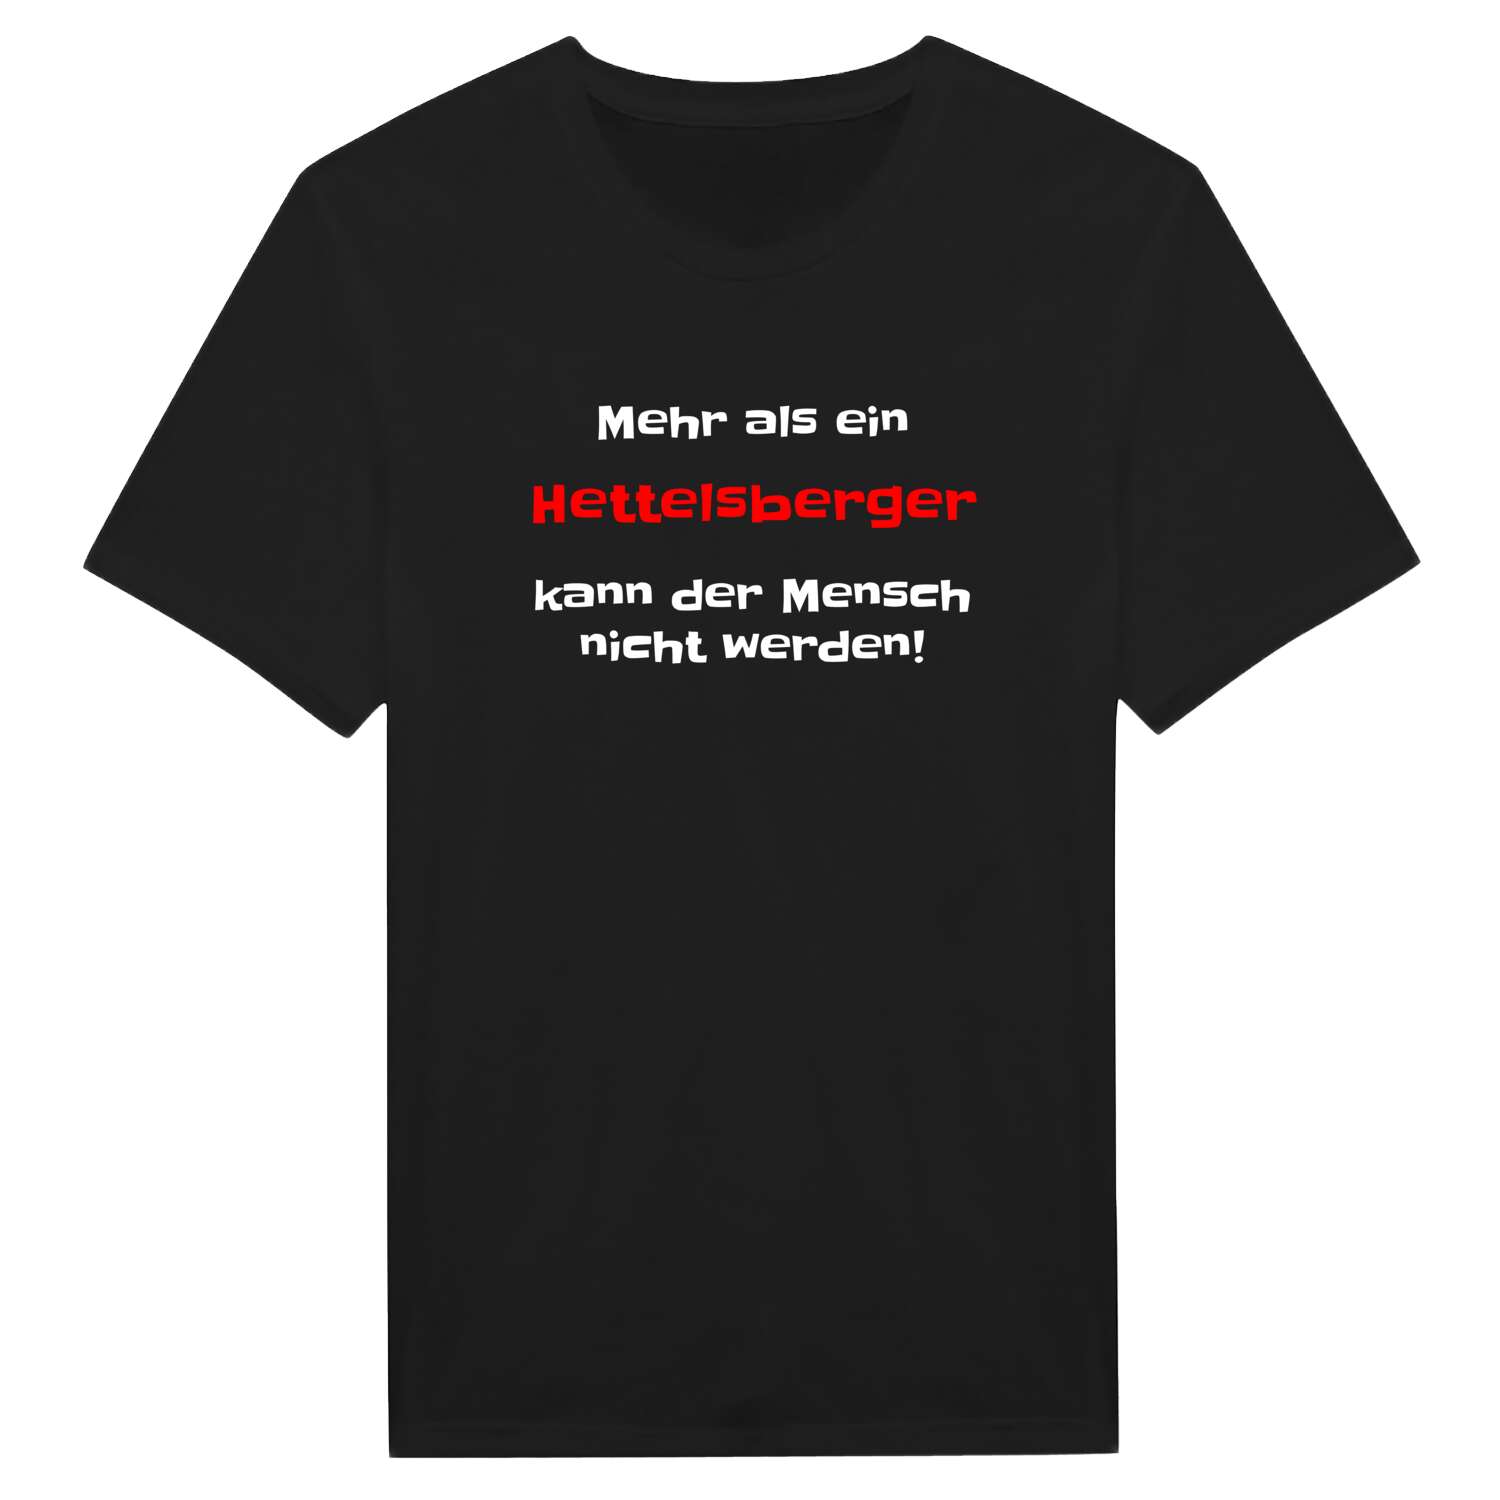 Hettelsberg T-Shirt »Mehr als ein«